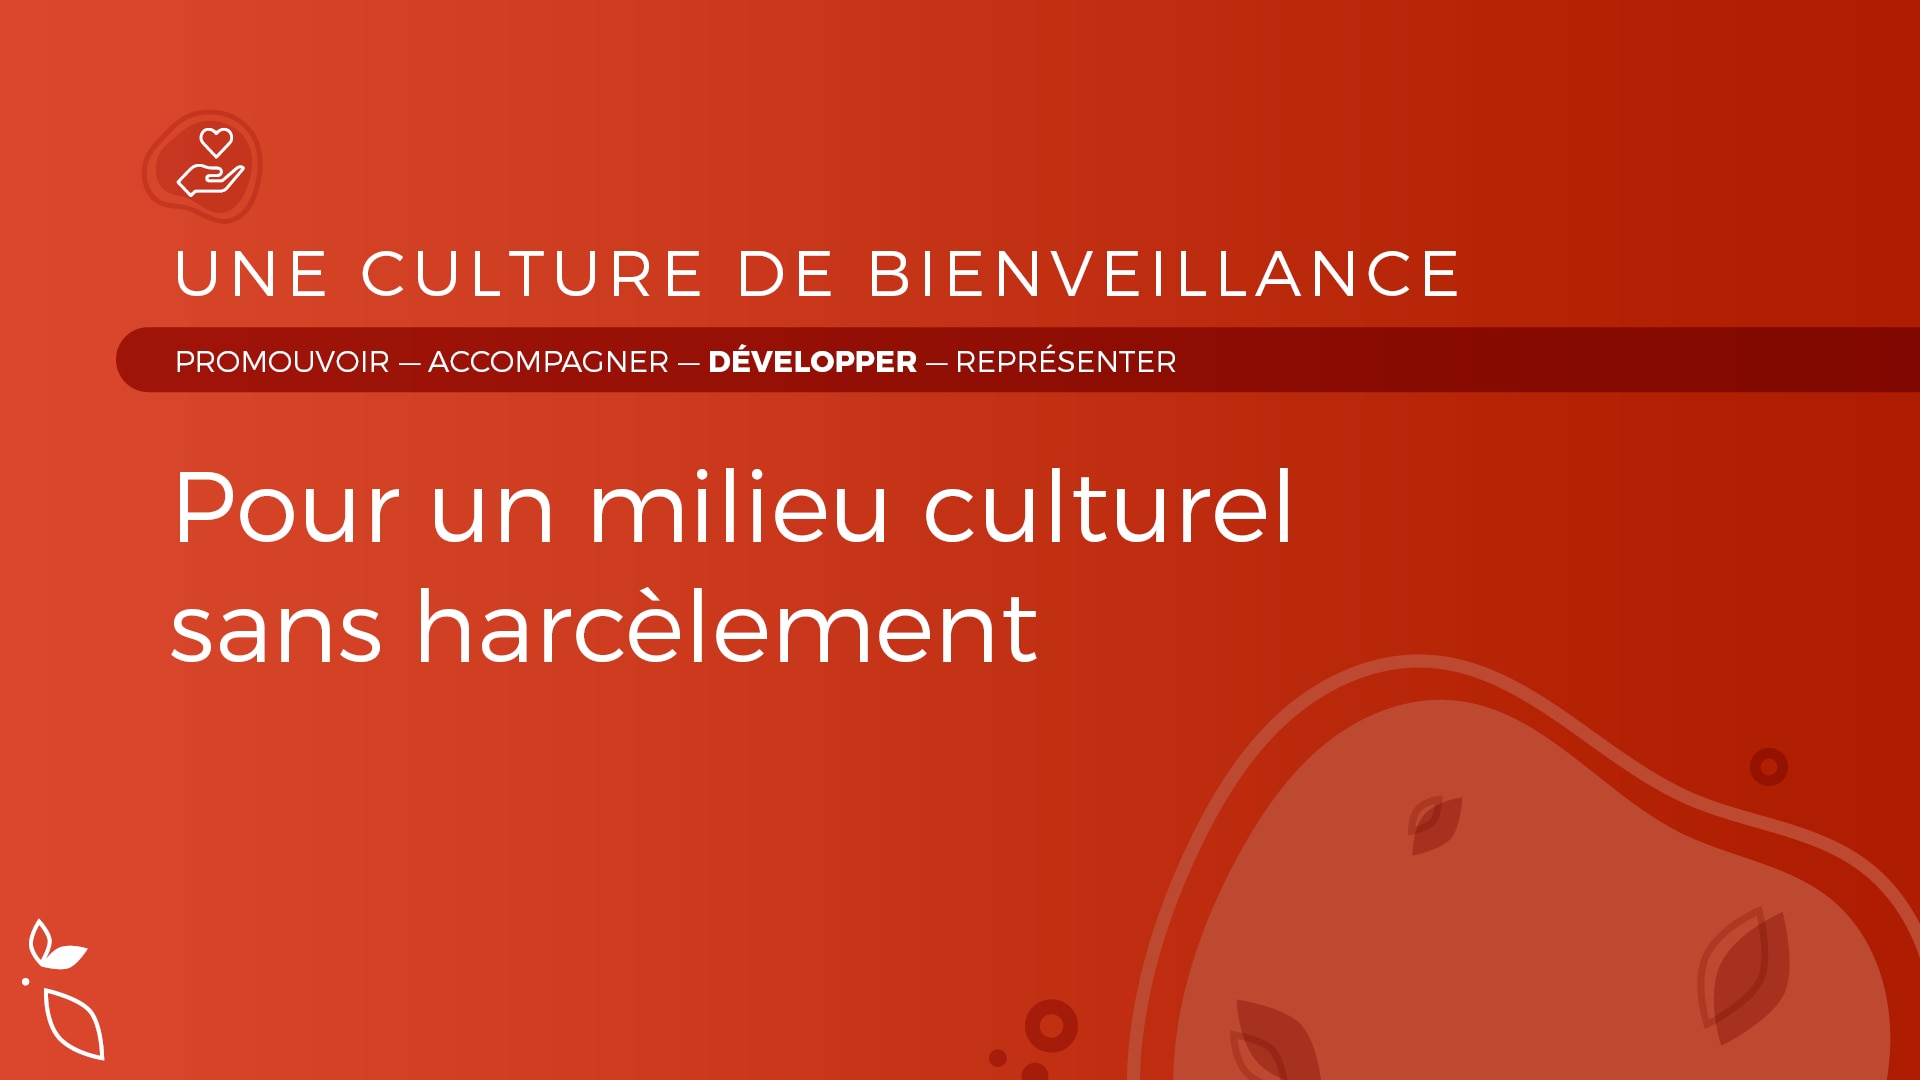 Une culture de bienveillance, un milieu culturel sans harcèlement
Une culture de bienveillance, un milieu culturel sans harcèlement